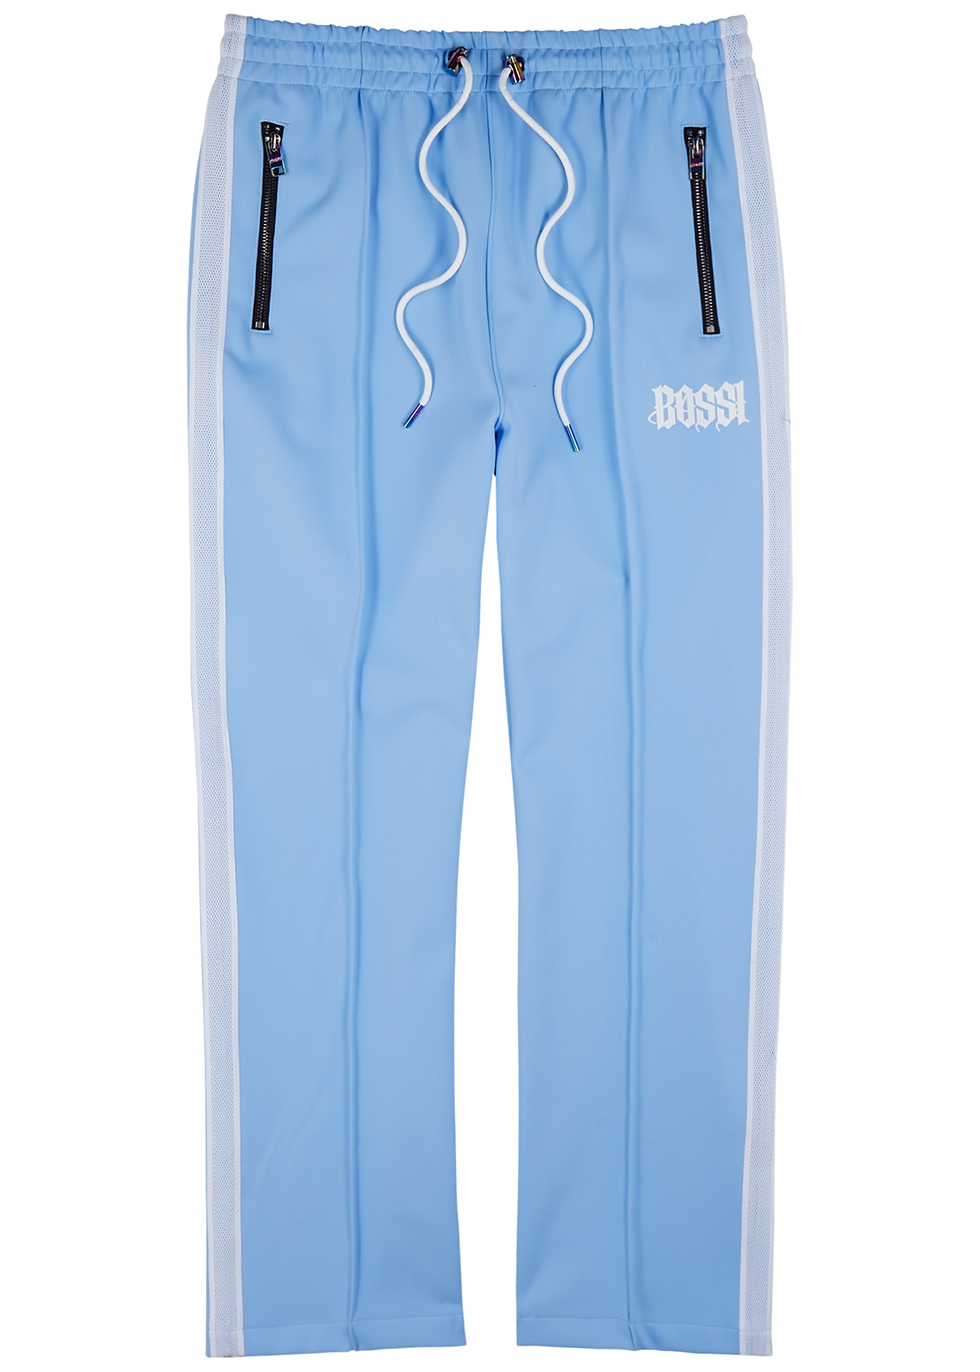 BOSSI Sportswear Light blue neoprene track pants